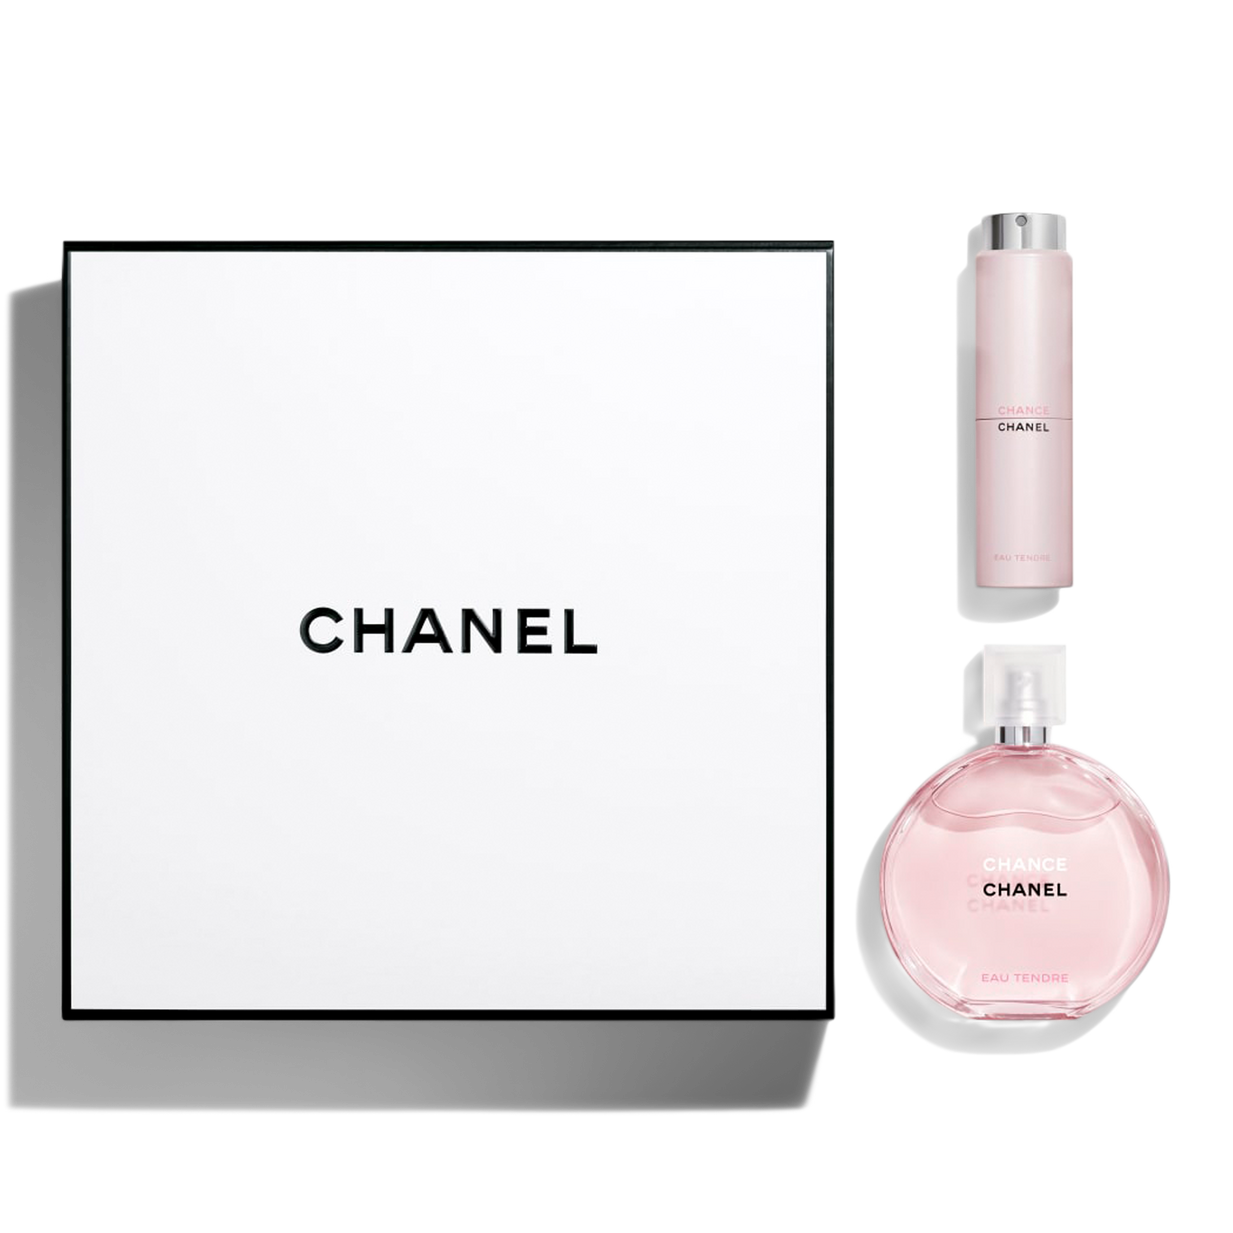 Chanel Chance Eau Fraîche Eau de Parfum Spray - 3.4 oz